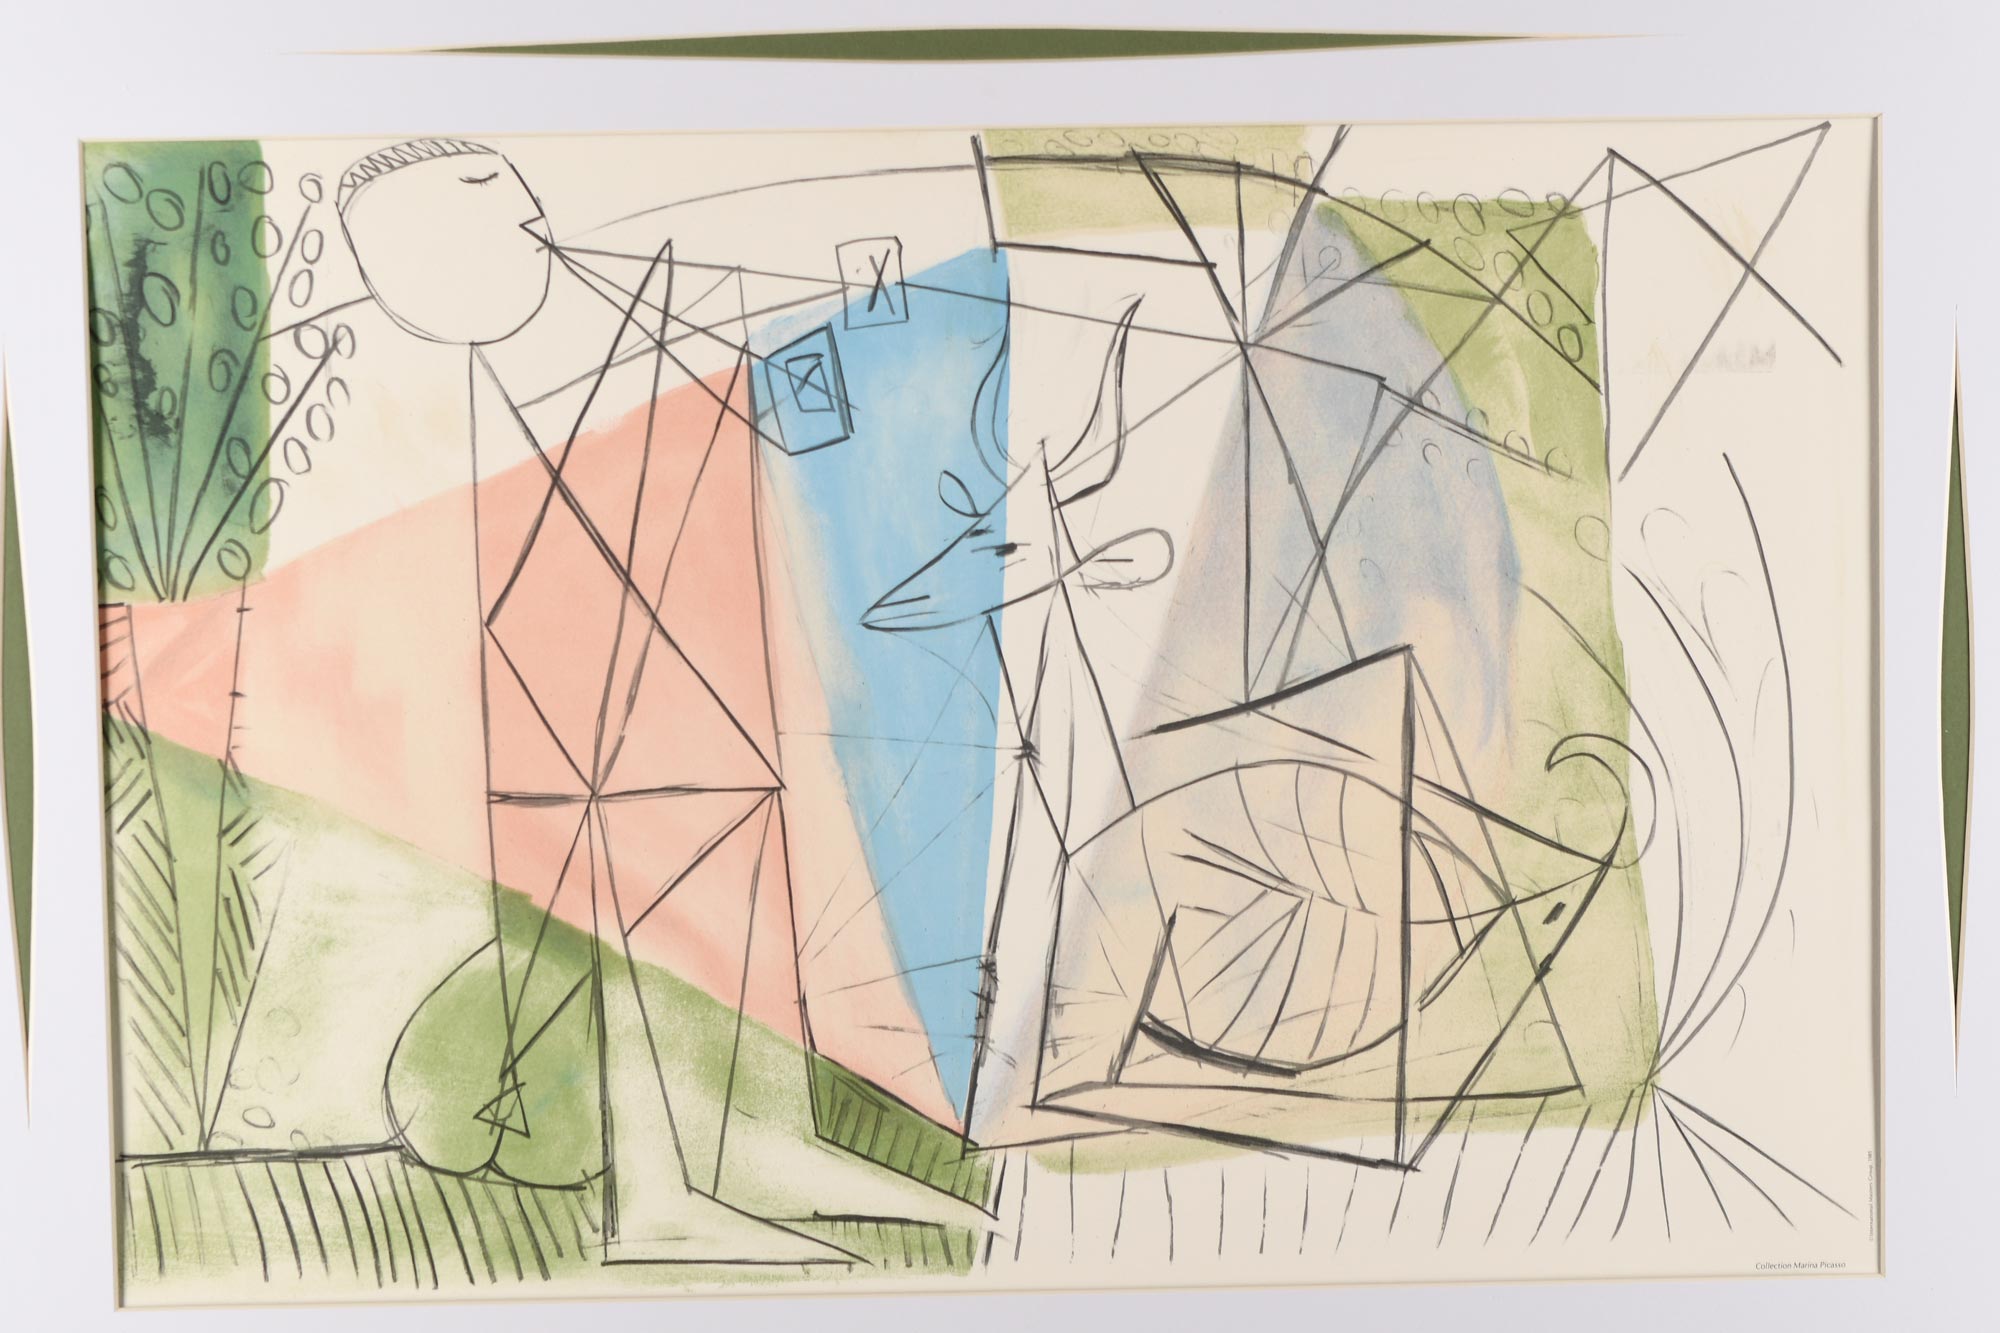 Pablo Picasso Limited Edition Original Lithograph "Joueuer De Flute et Gazelle" - Image 4 of 11